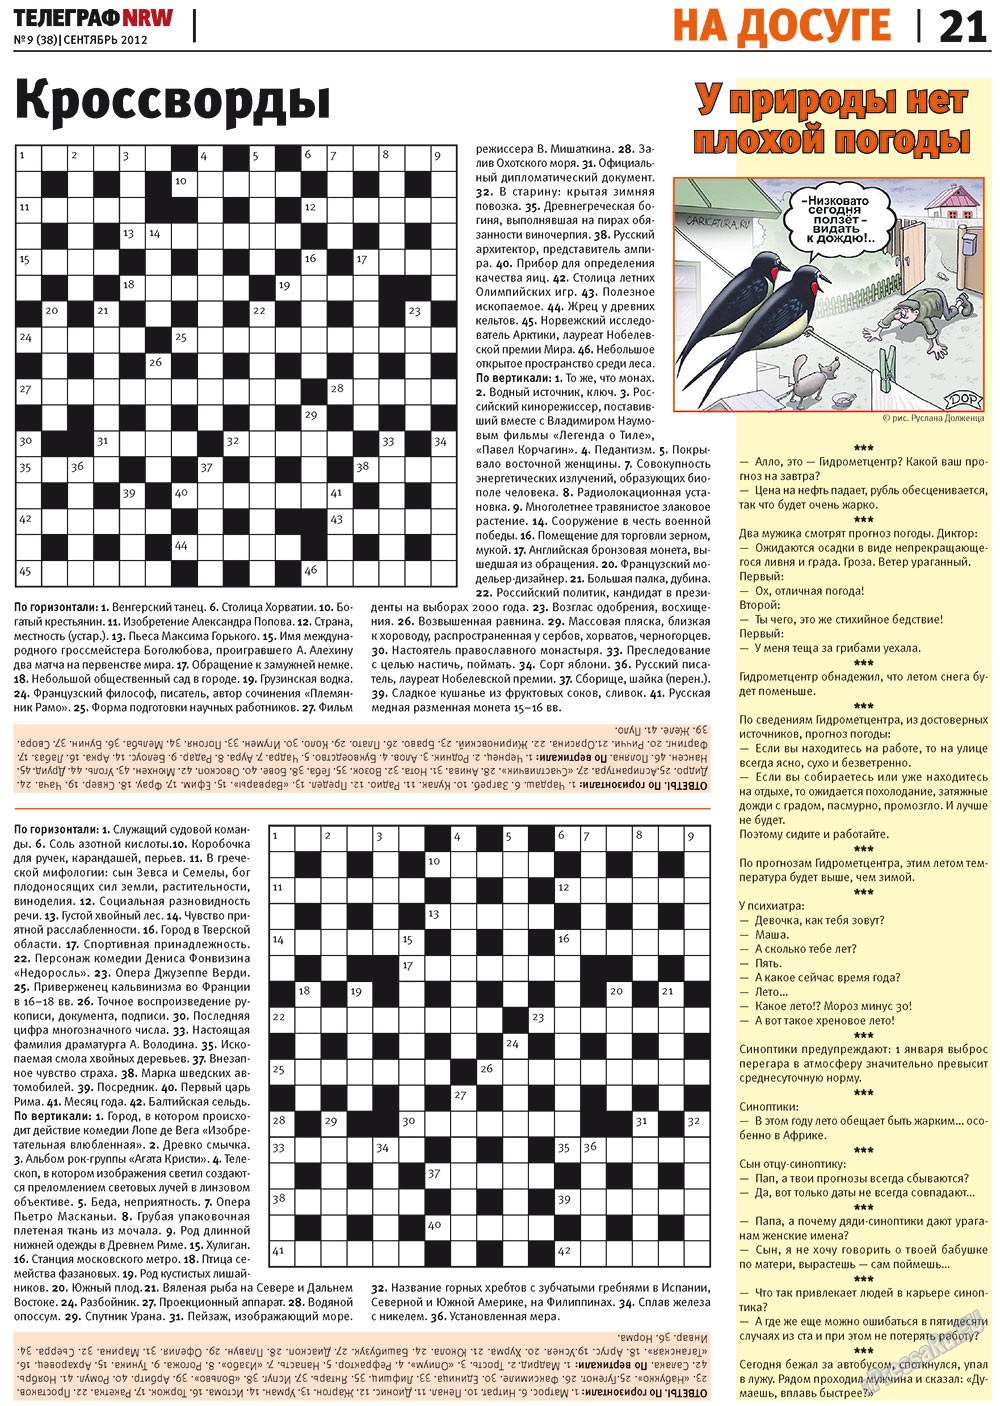 Телеграф NRW (газета). 2012 год, номер 9, стр. 21